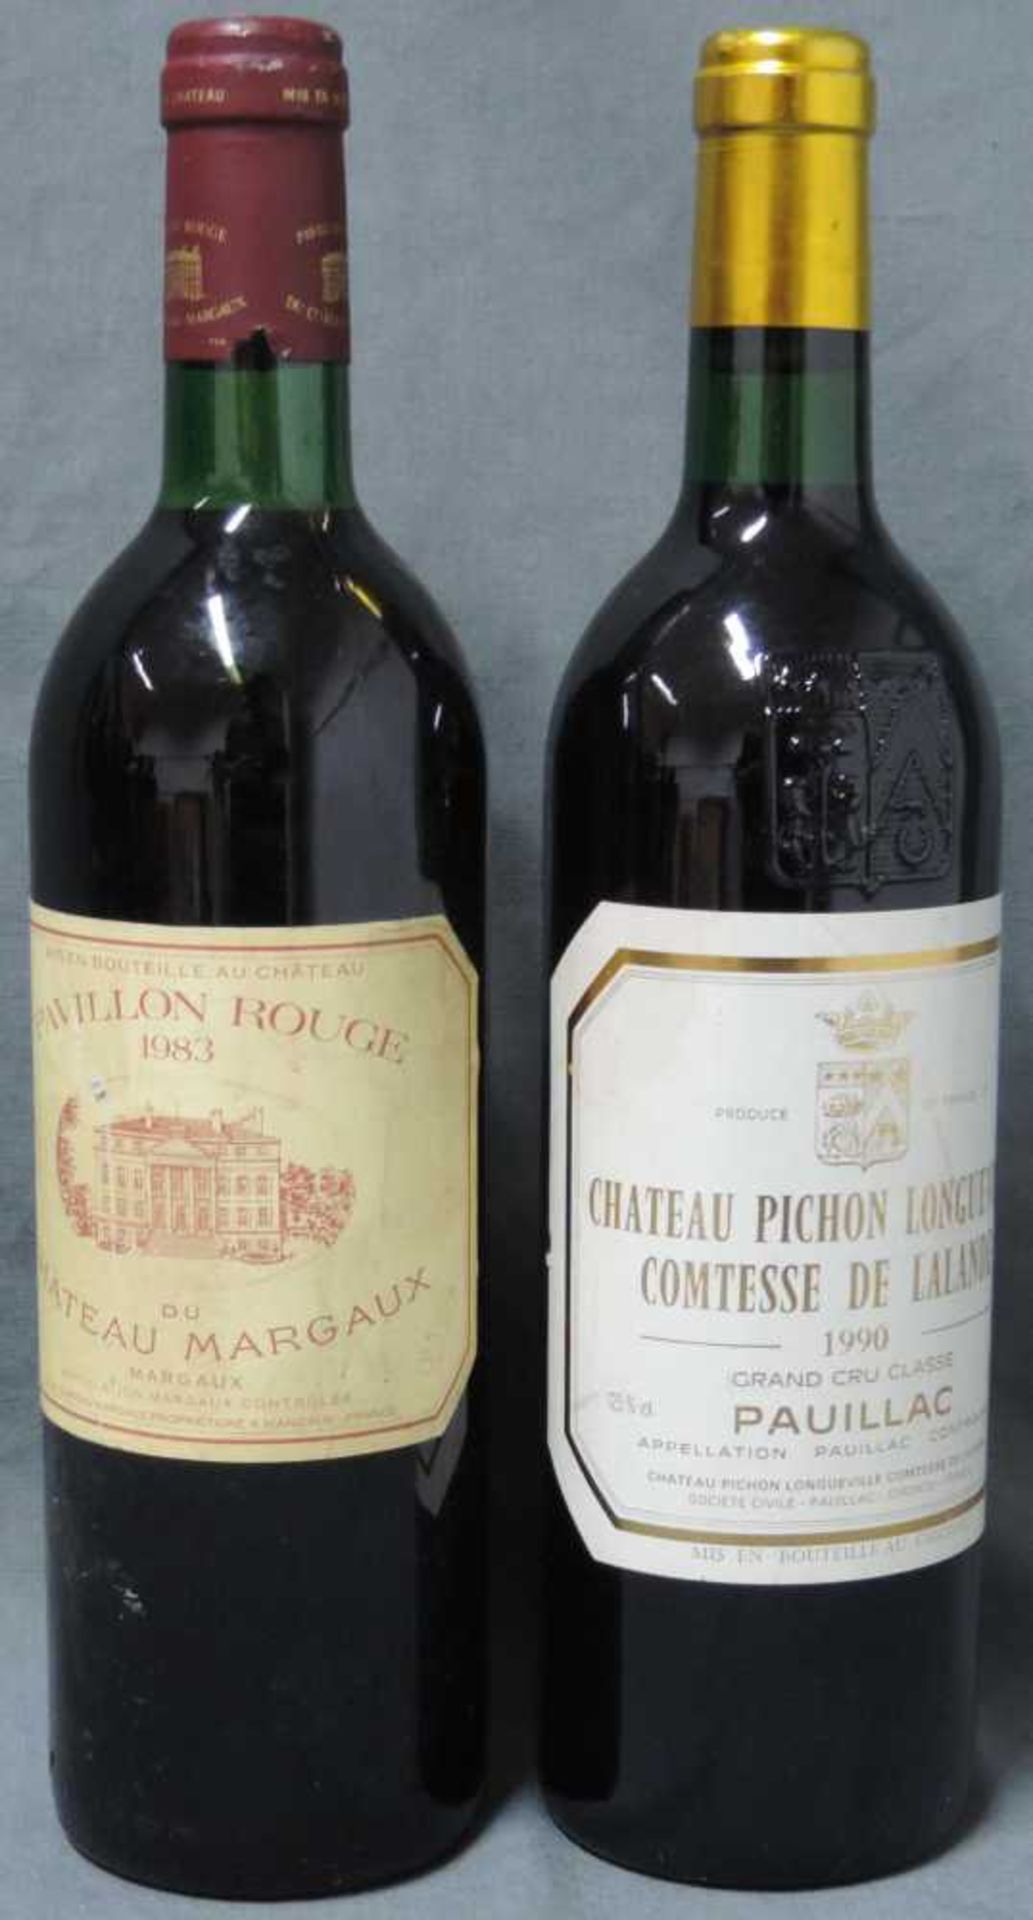 1990 Chateaux Pichon Longueville Comtesse de Lalande, Pauillac. Grand Cru Classé. Dazu 1983